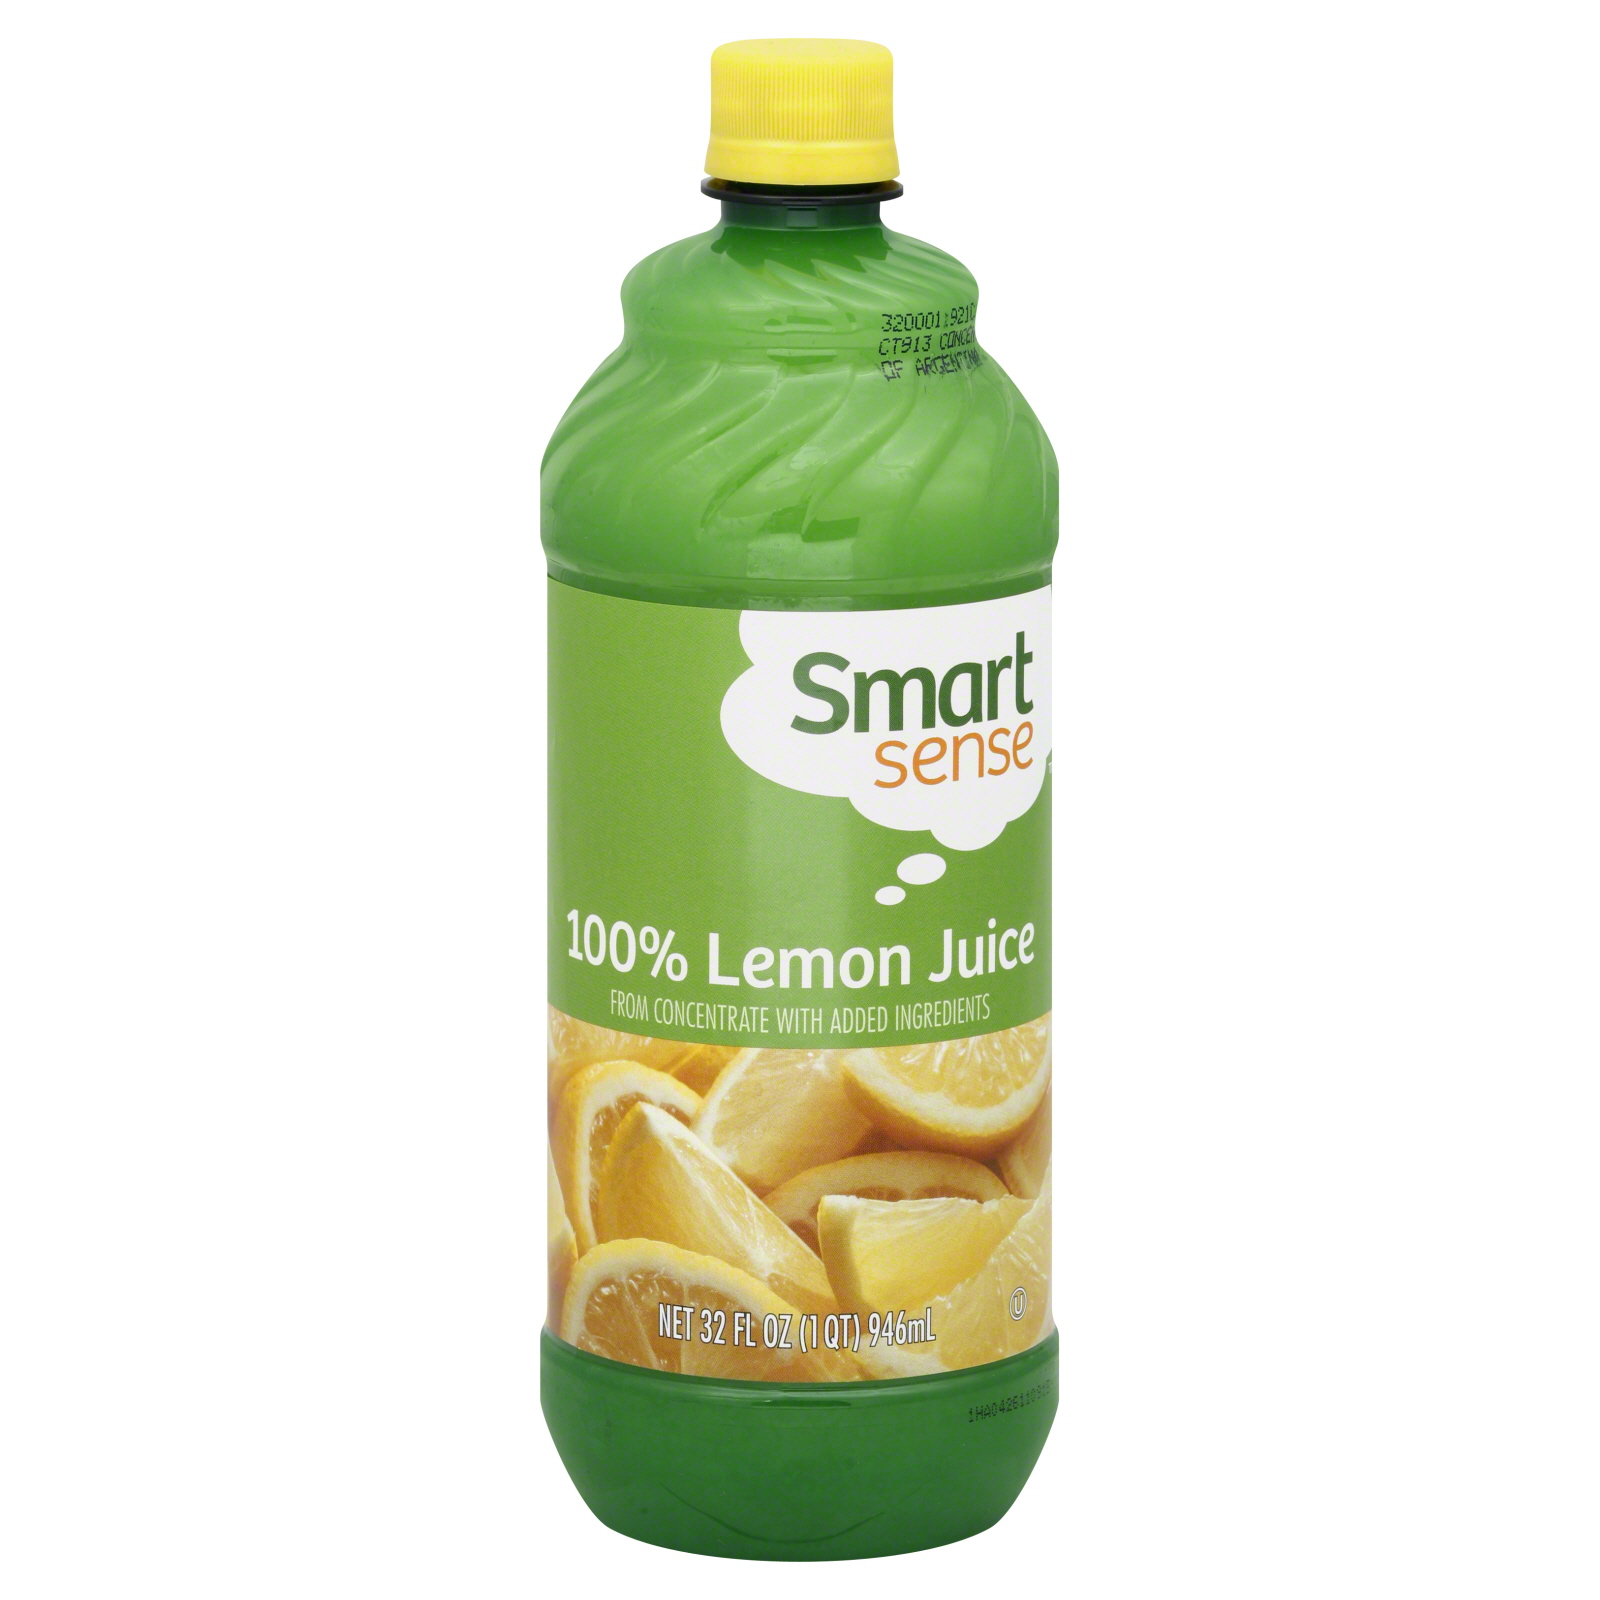 Smart Sense Lemon Juice, 100% 32 oz (1 qt) 946 ml